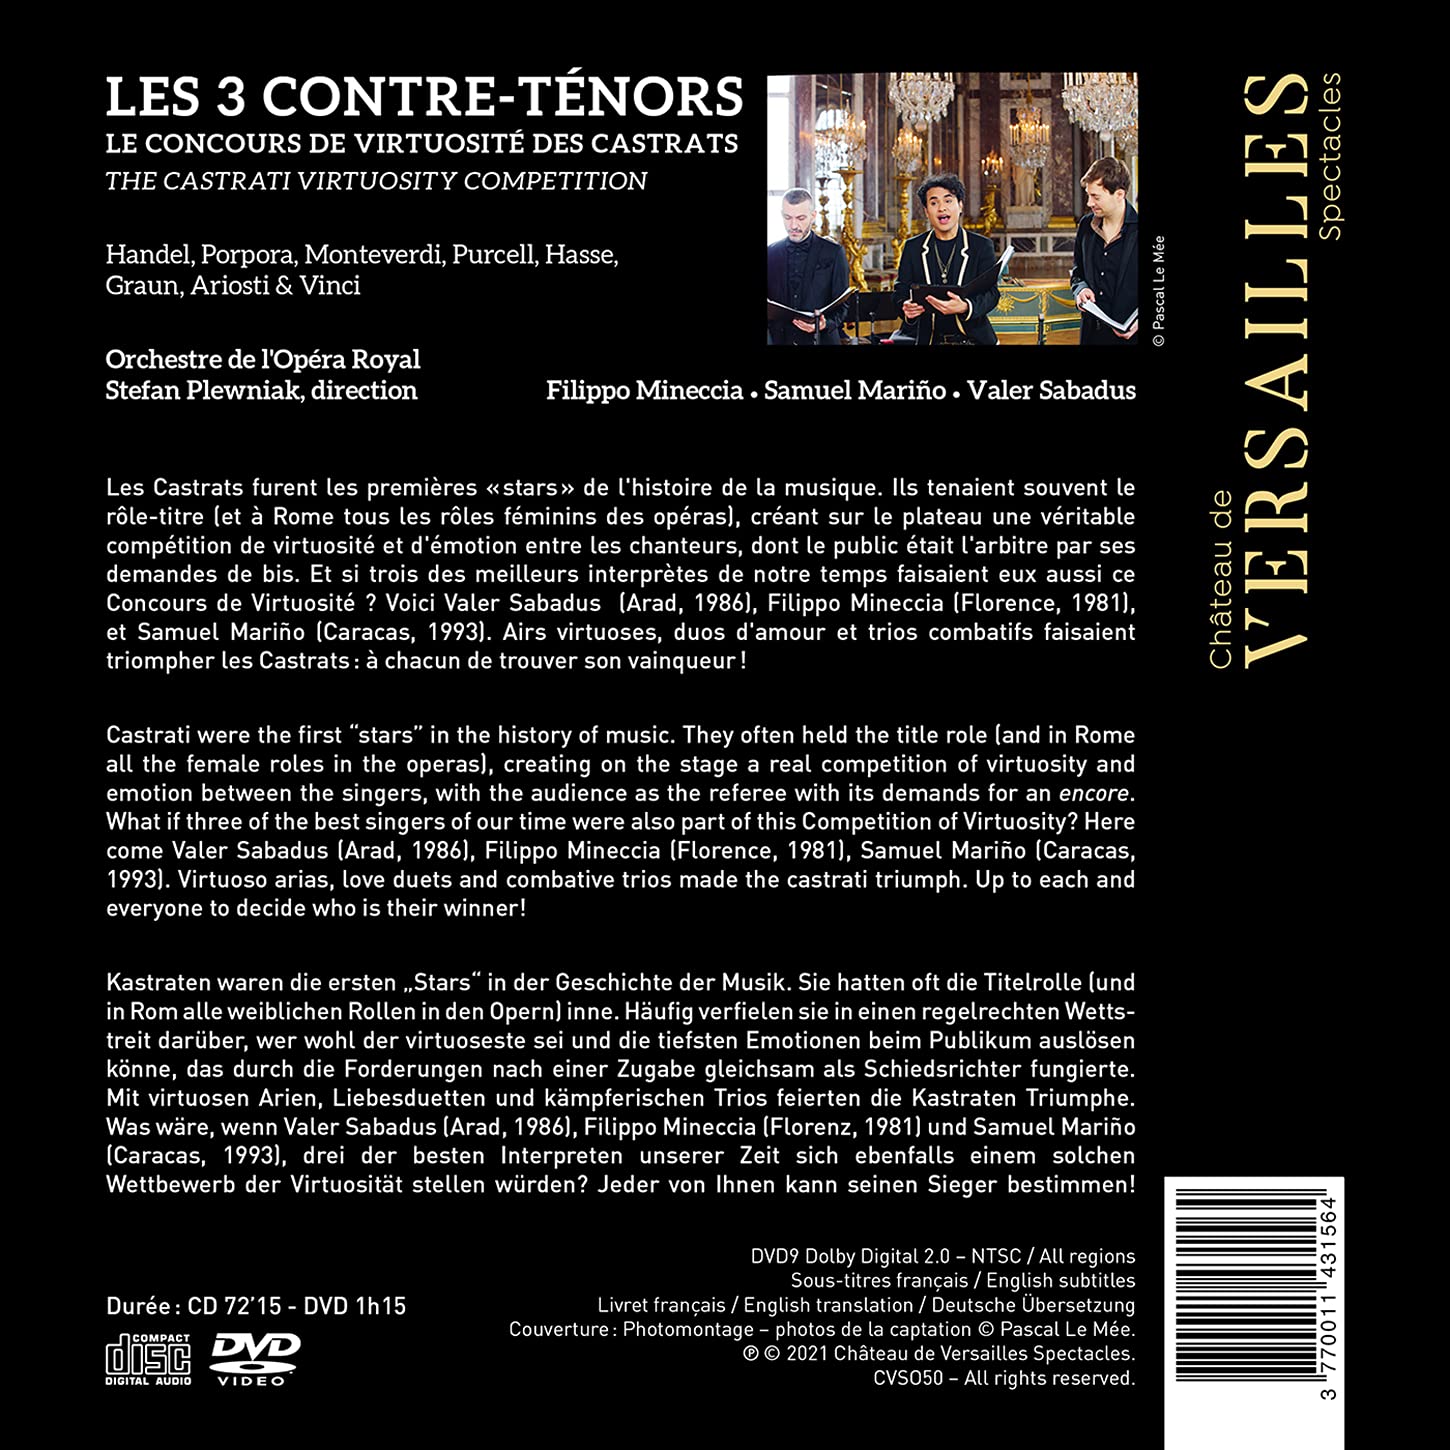 Samuel Marino / Filippo Mineccia / Valer Sabadus 베르사유 궁의 세 카운터테너 (Les 3 Contre-Tenors) [CD+DVD] 